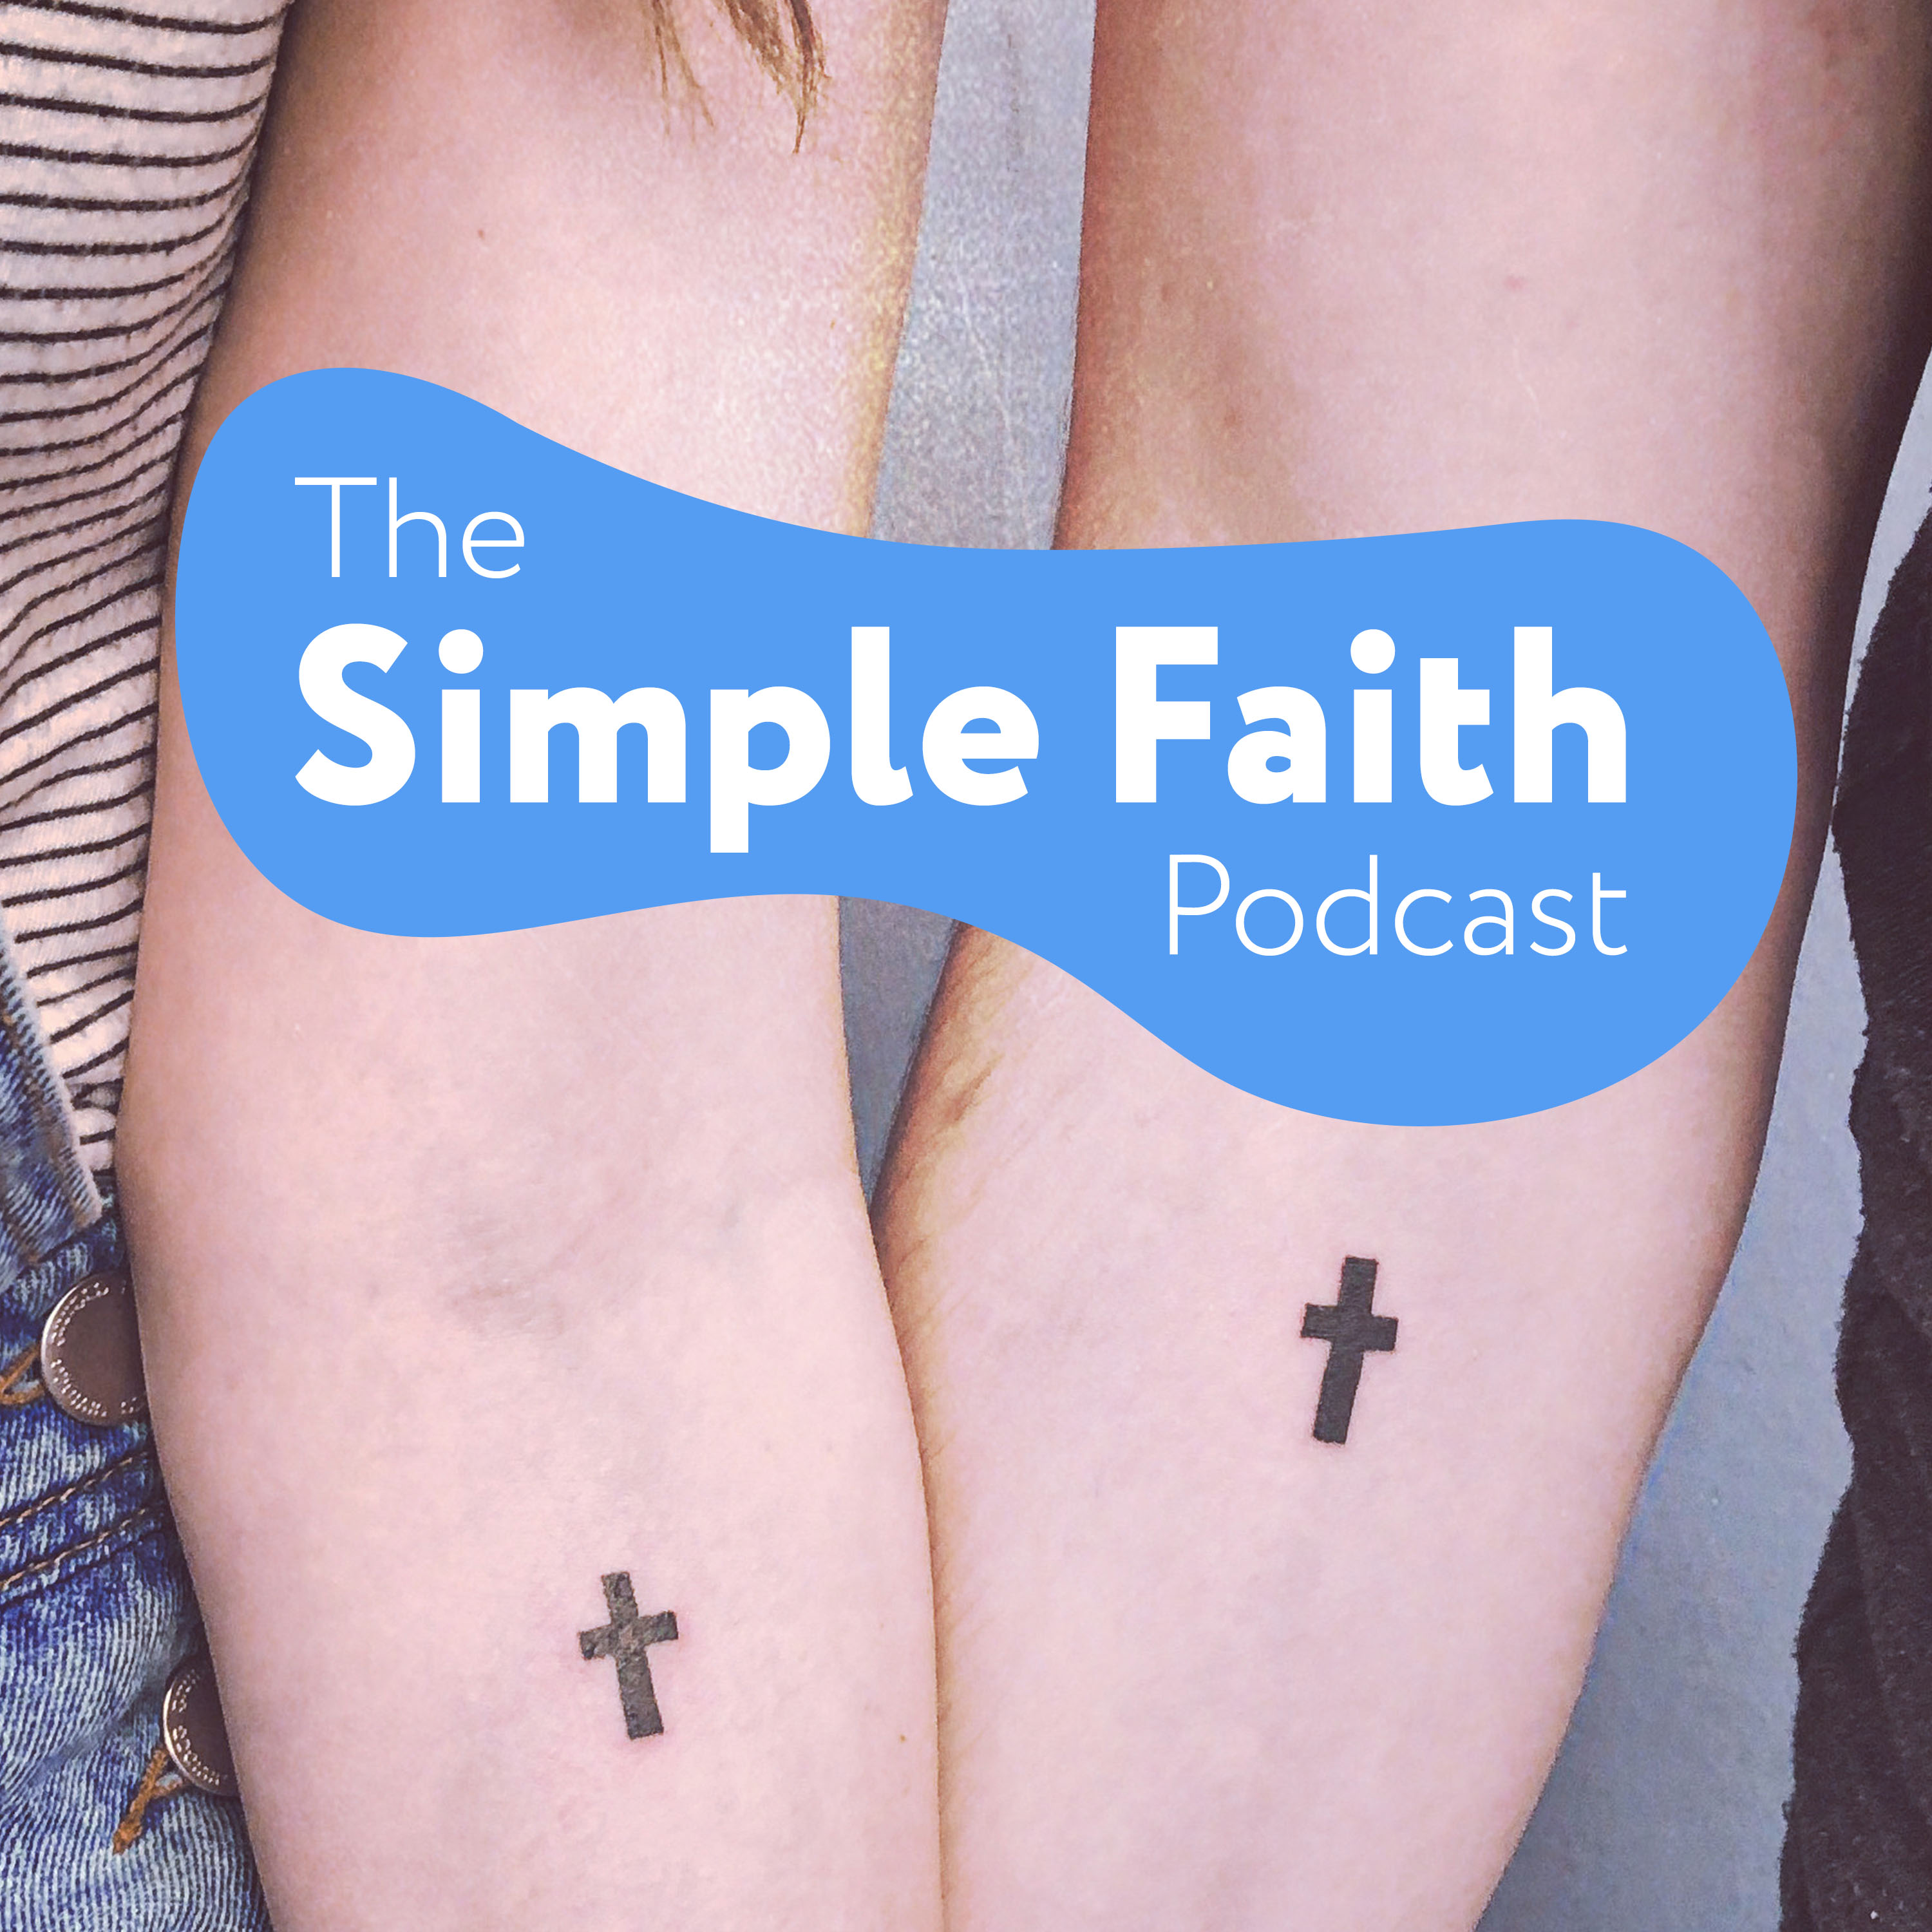 The Simple Faith Podcast